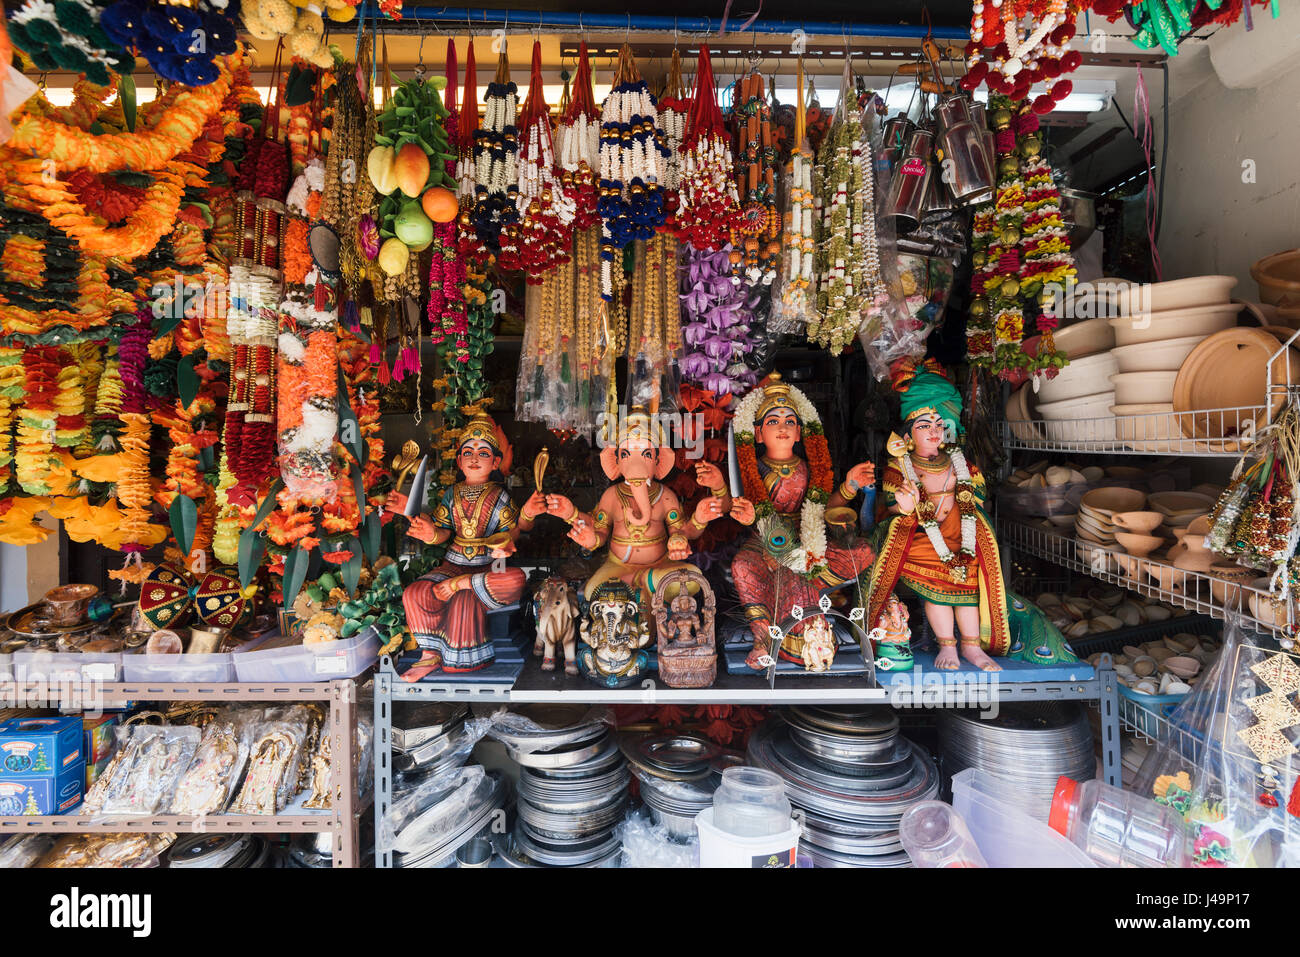 Singapur - Singapur - 20. April 2017: Indische Geschenkeladen im Bezirk von Singapur Little India. Stockfoto